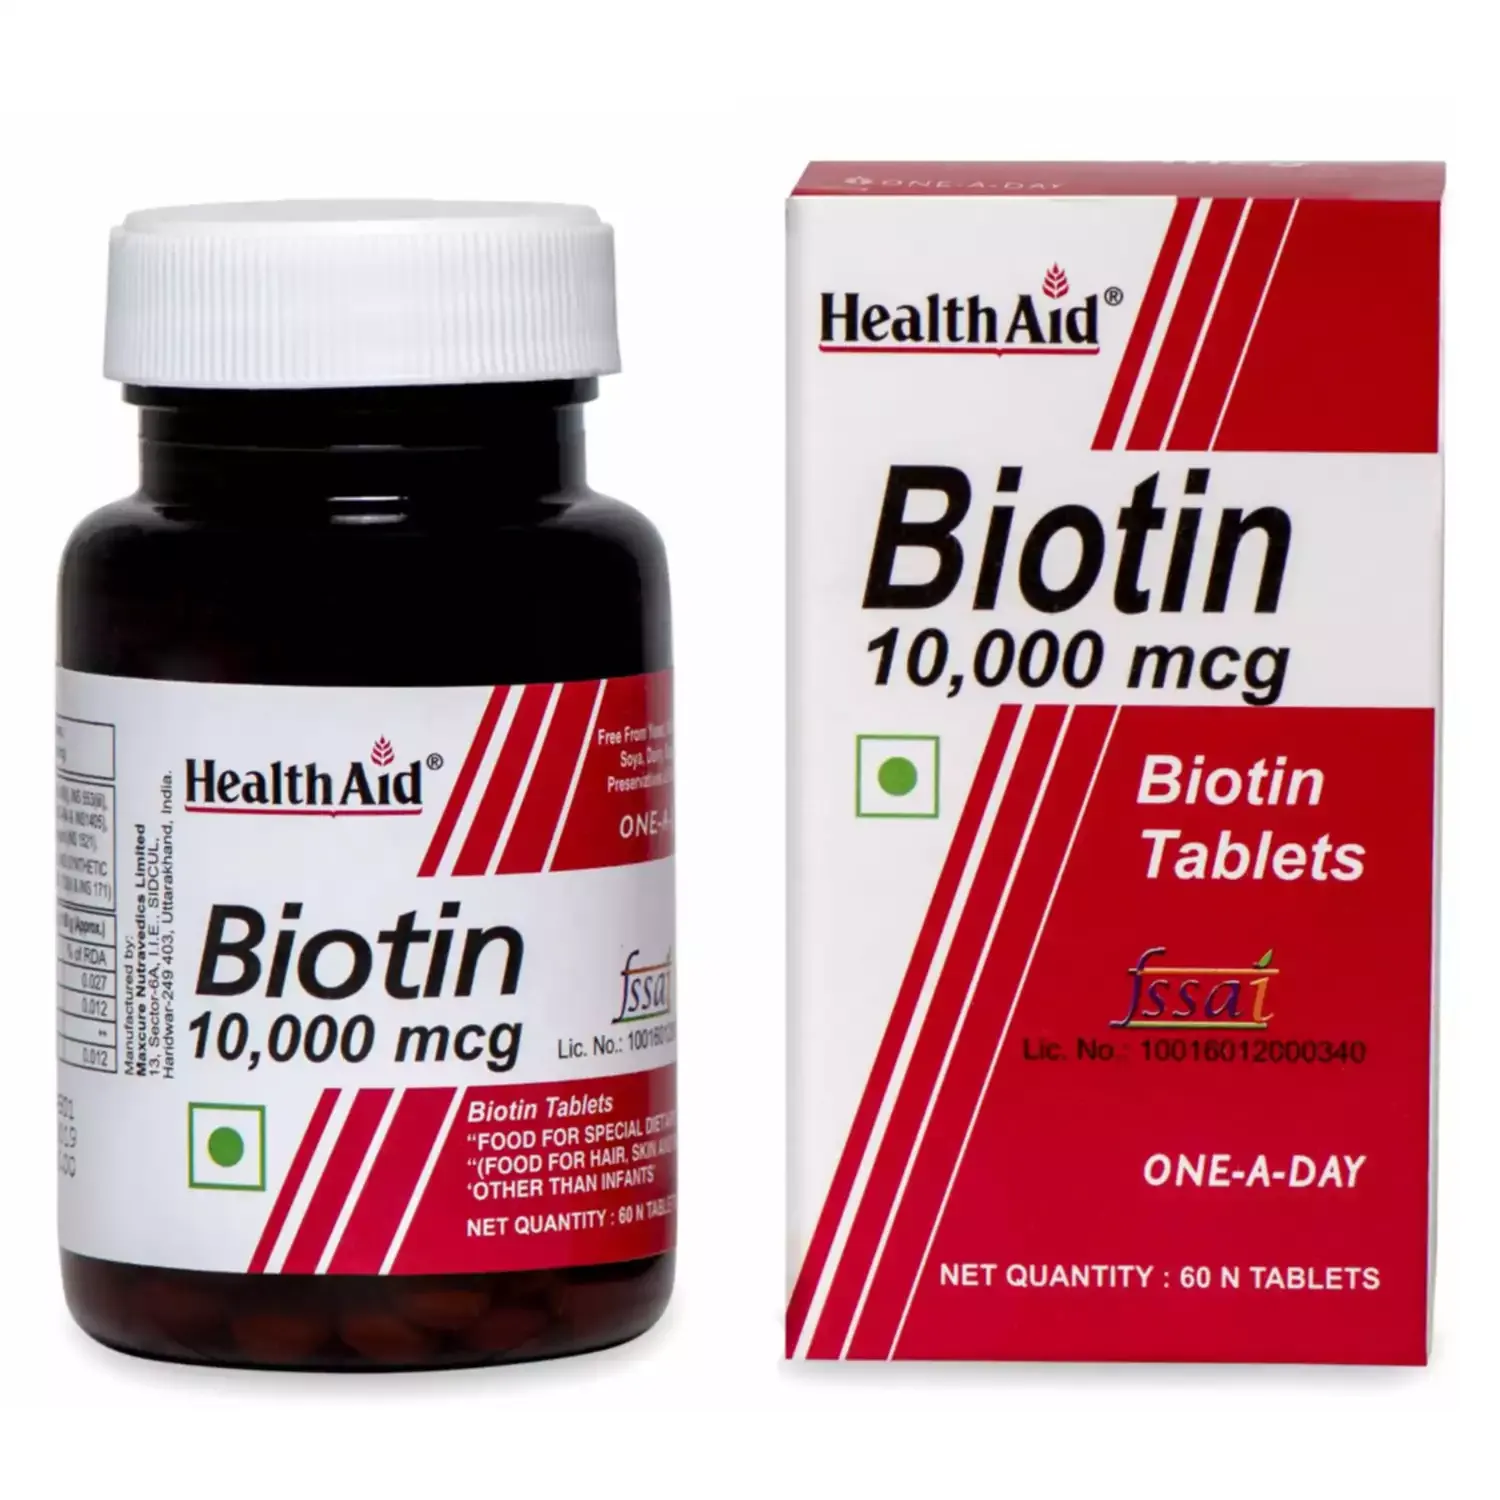 HealthAid Biotin 10,000mcg (60 tablets)